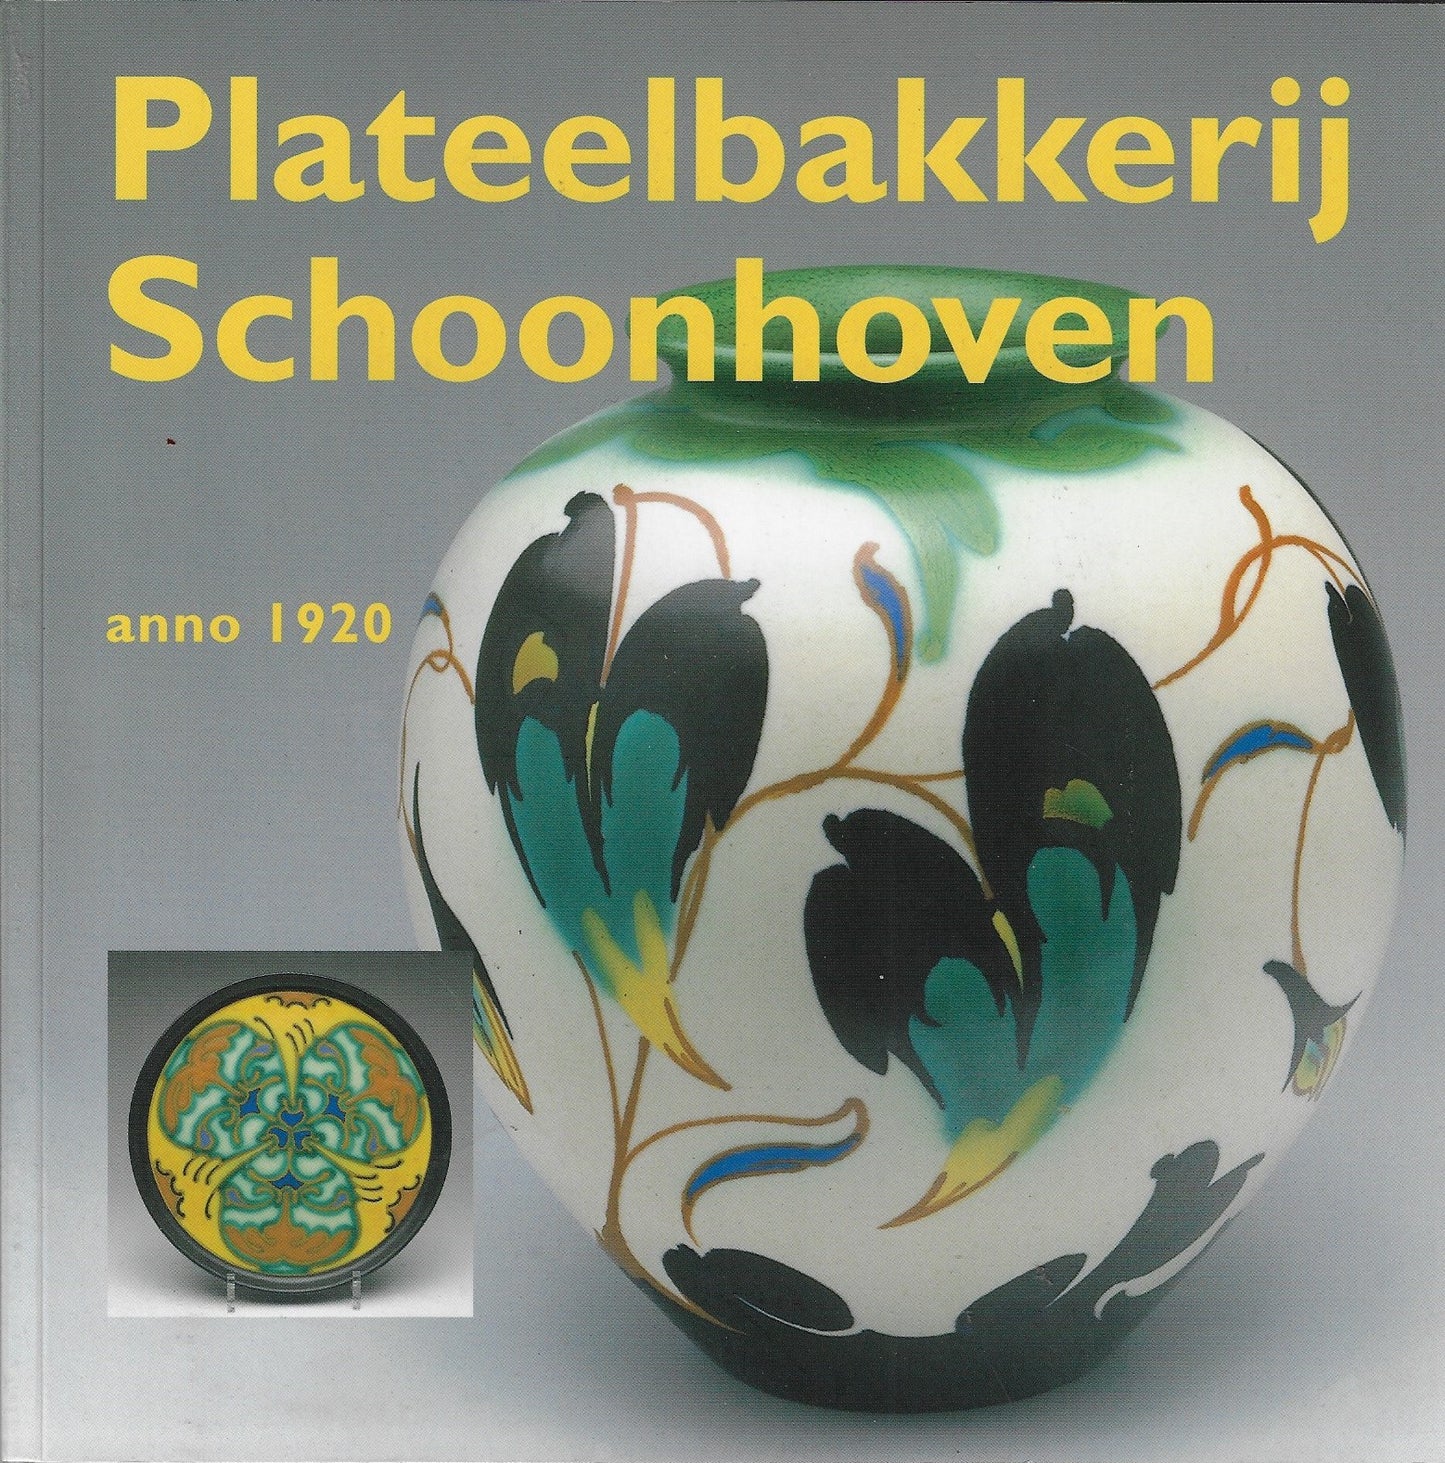 Handboekjes over kunstnijverheid en vormgeving Plateelbakkerij Schoonhoven Anno 1920 / sieraardewerk van v/h Plateelbakkerij Schoonhoven anno 1920